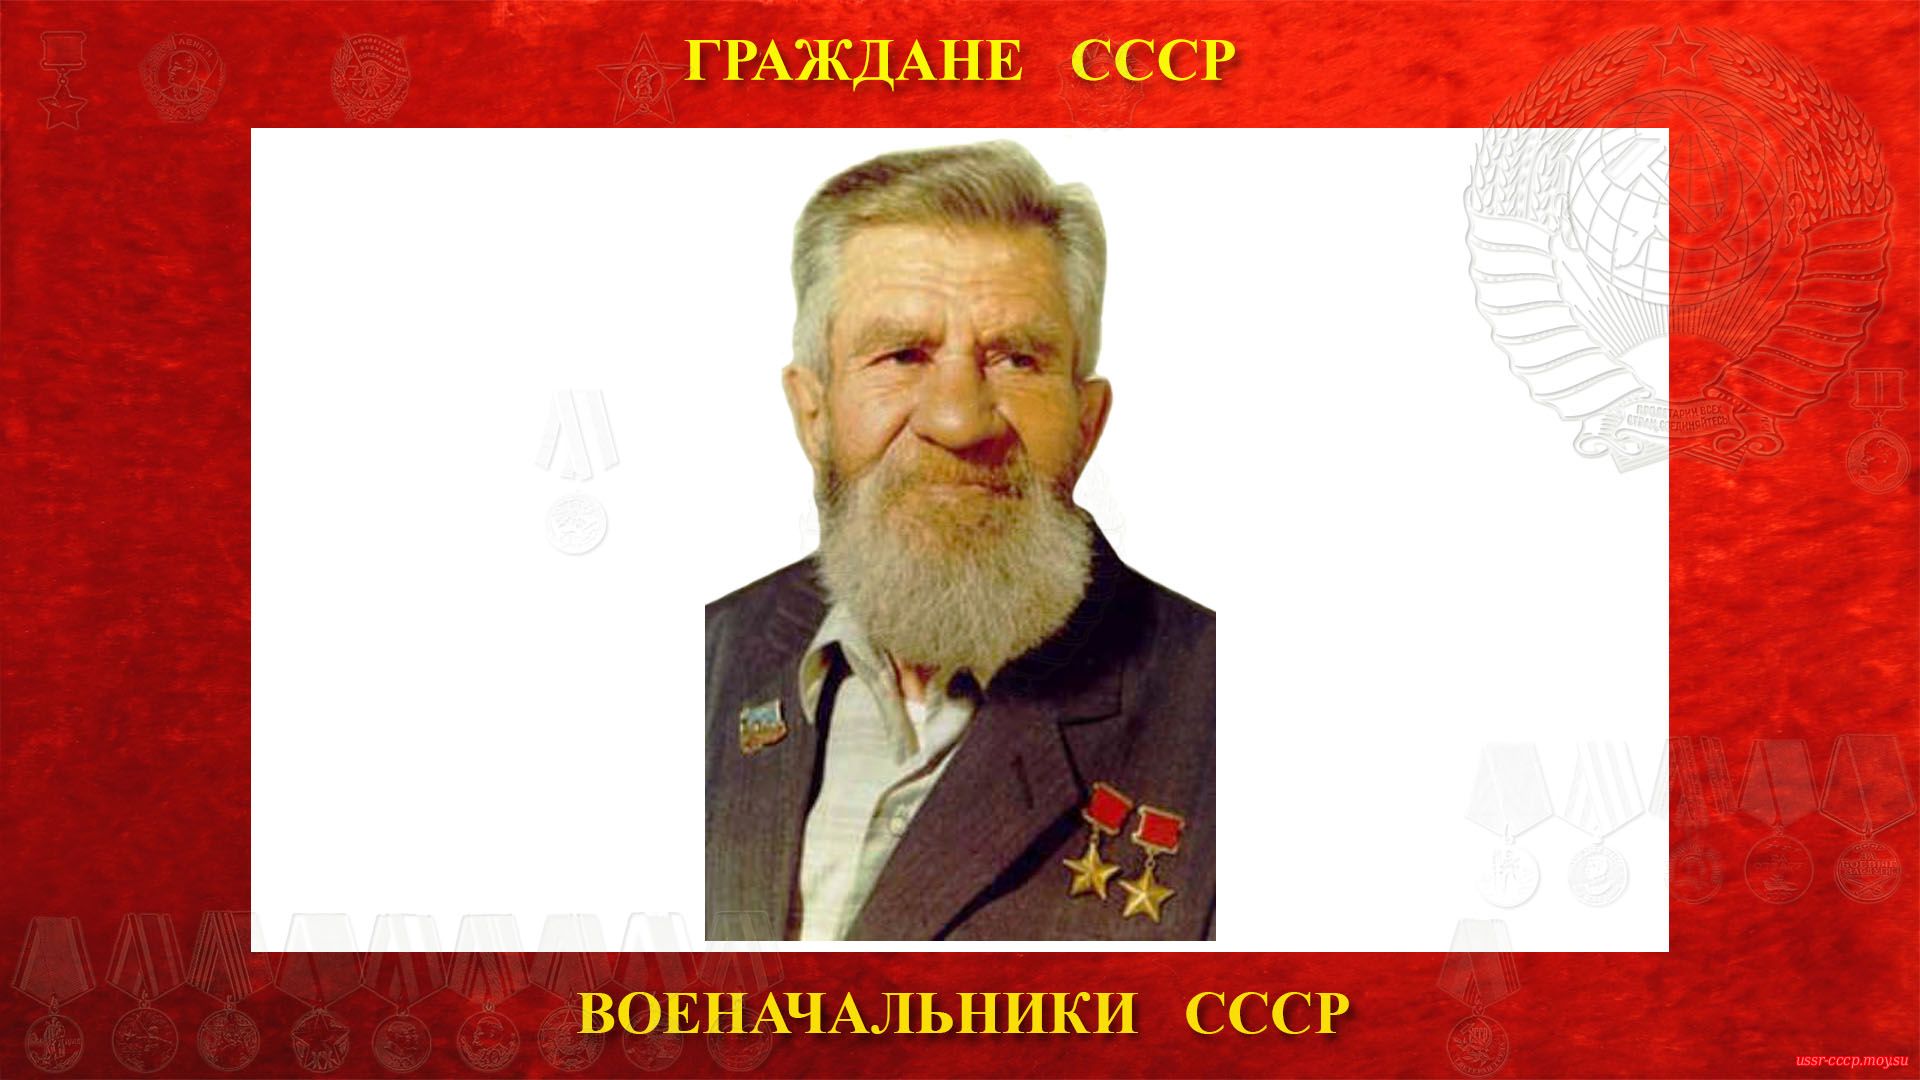 Леонов Виктор Николаевич — Советский военачальник СССР — Капитан 2-го ранга СССР